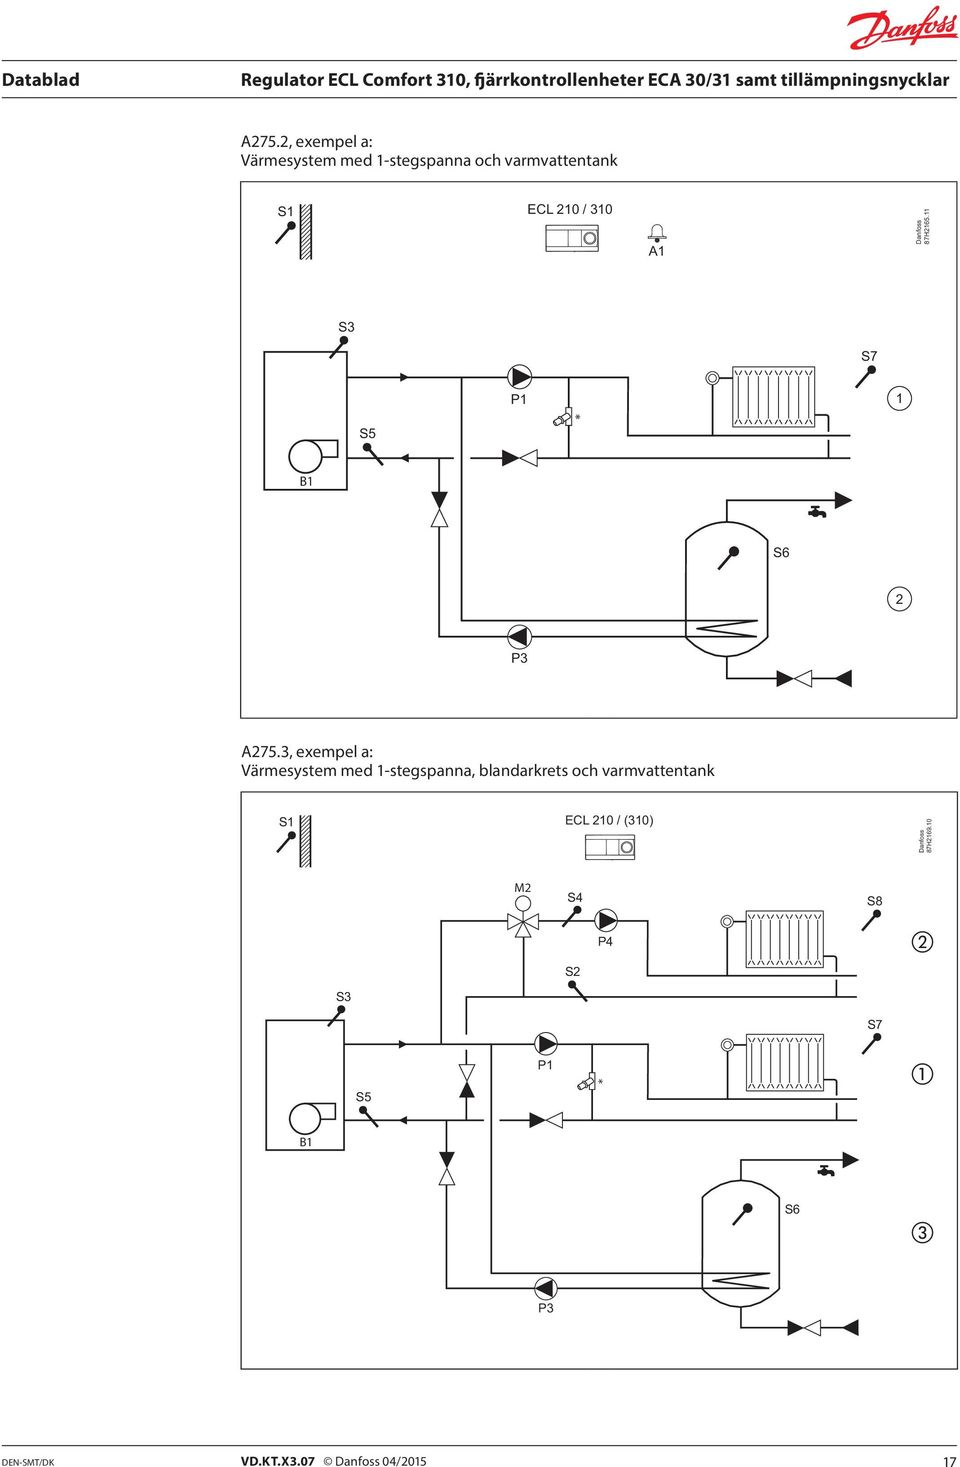 3, exempel a: Värmesystem med 1-stegspanna, blandarkrets och